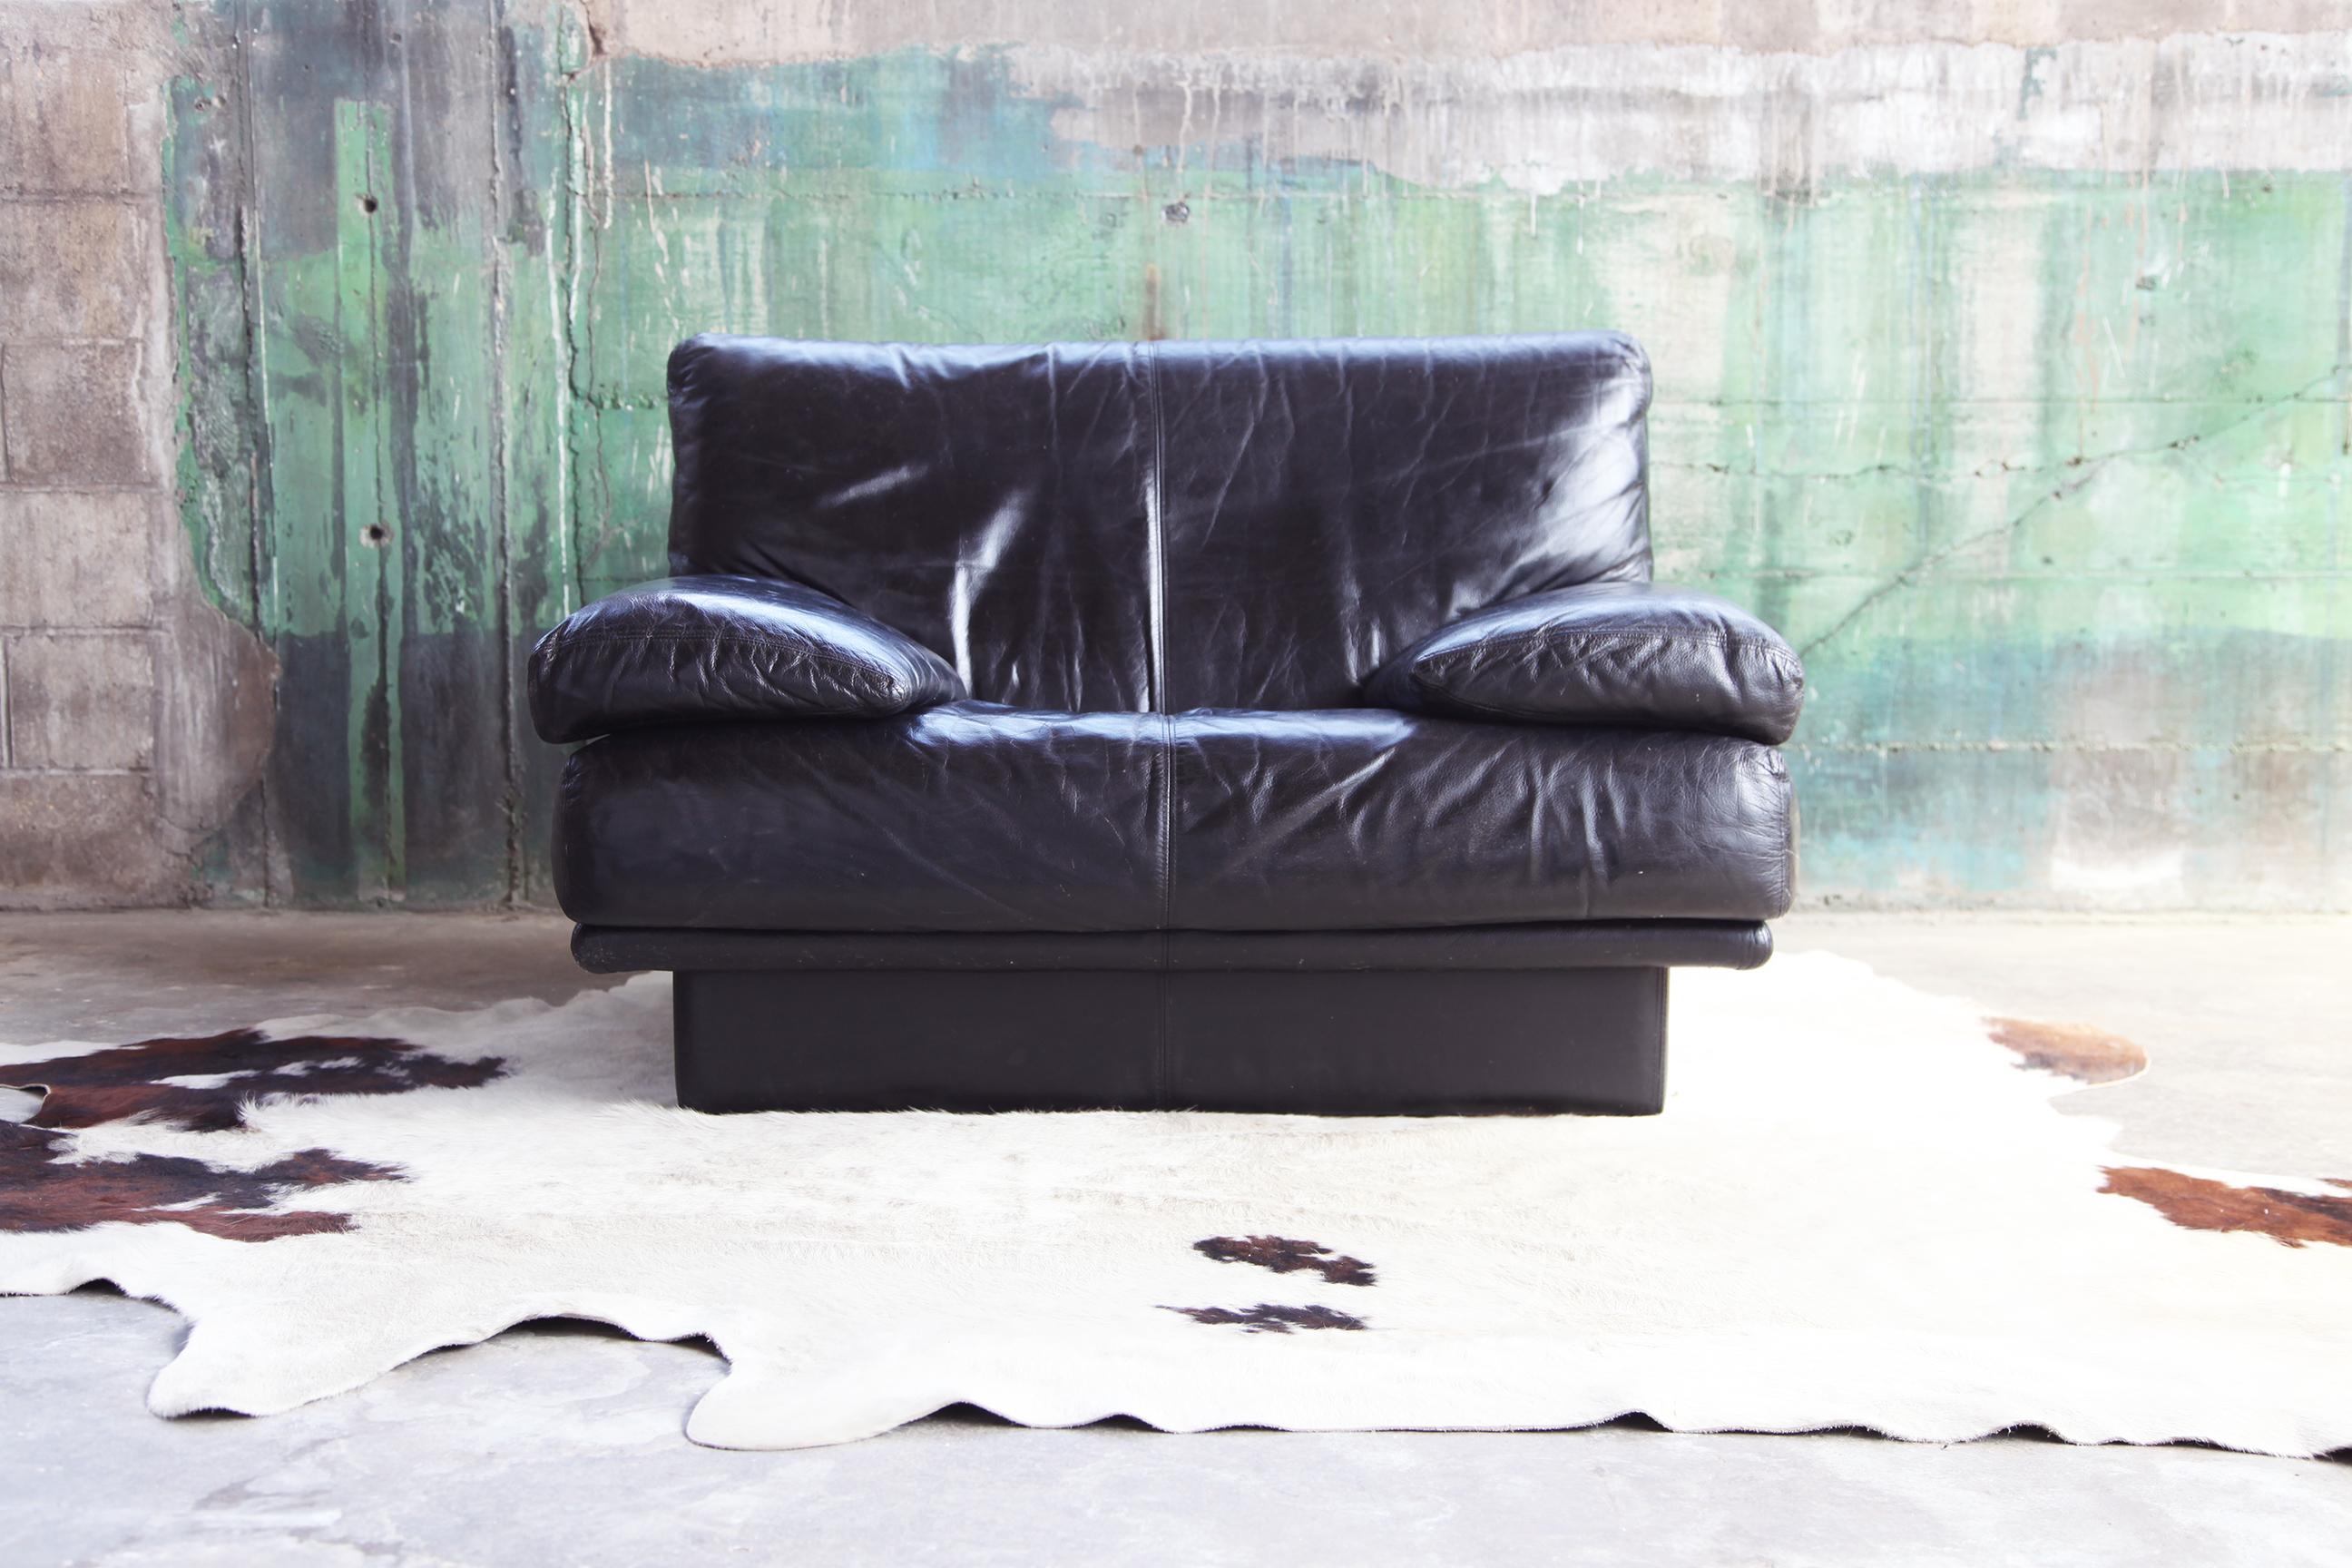 Il s'agit d'un canapé adapté à votre environnement de pointe, élégant et avant-gardiste. Sa forme est sculpturale et le grain du cuir est d'une qualité phénoménale. Le grain du cuir est magnifique, doux mais épais, et il est très confortable. Cette